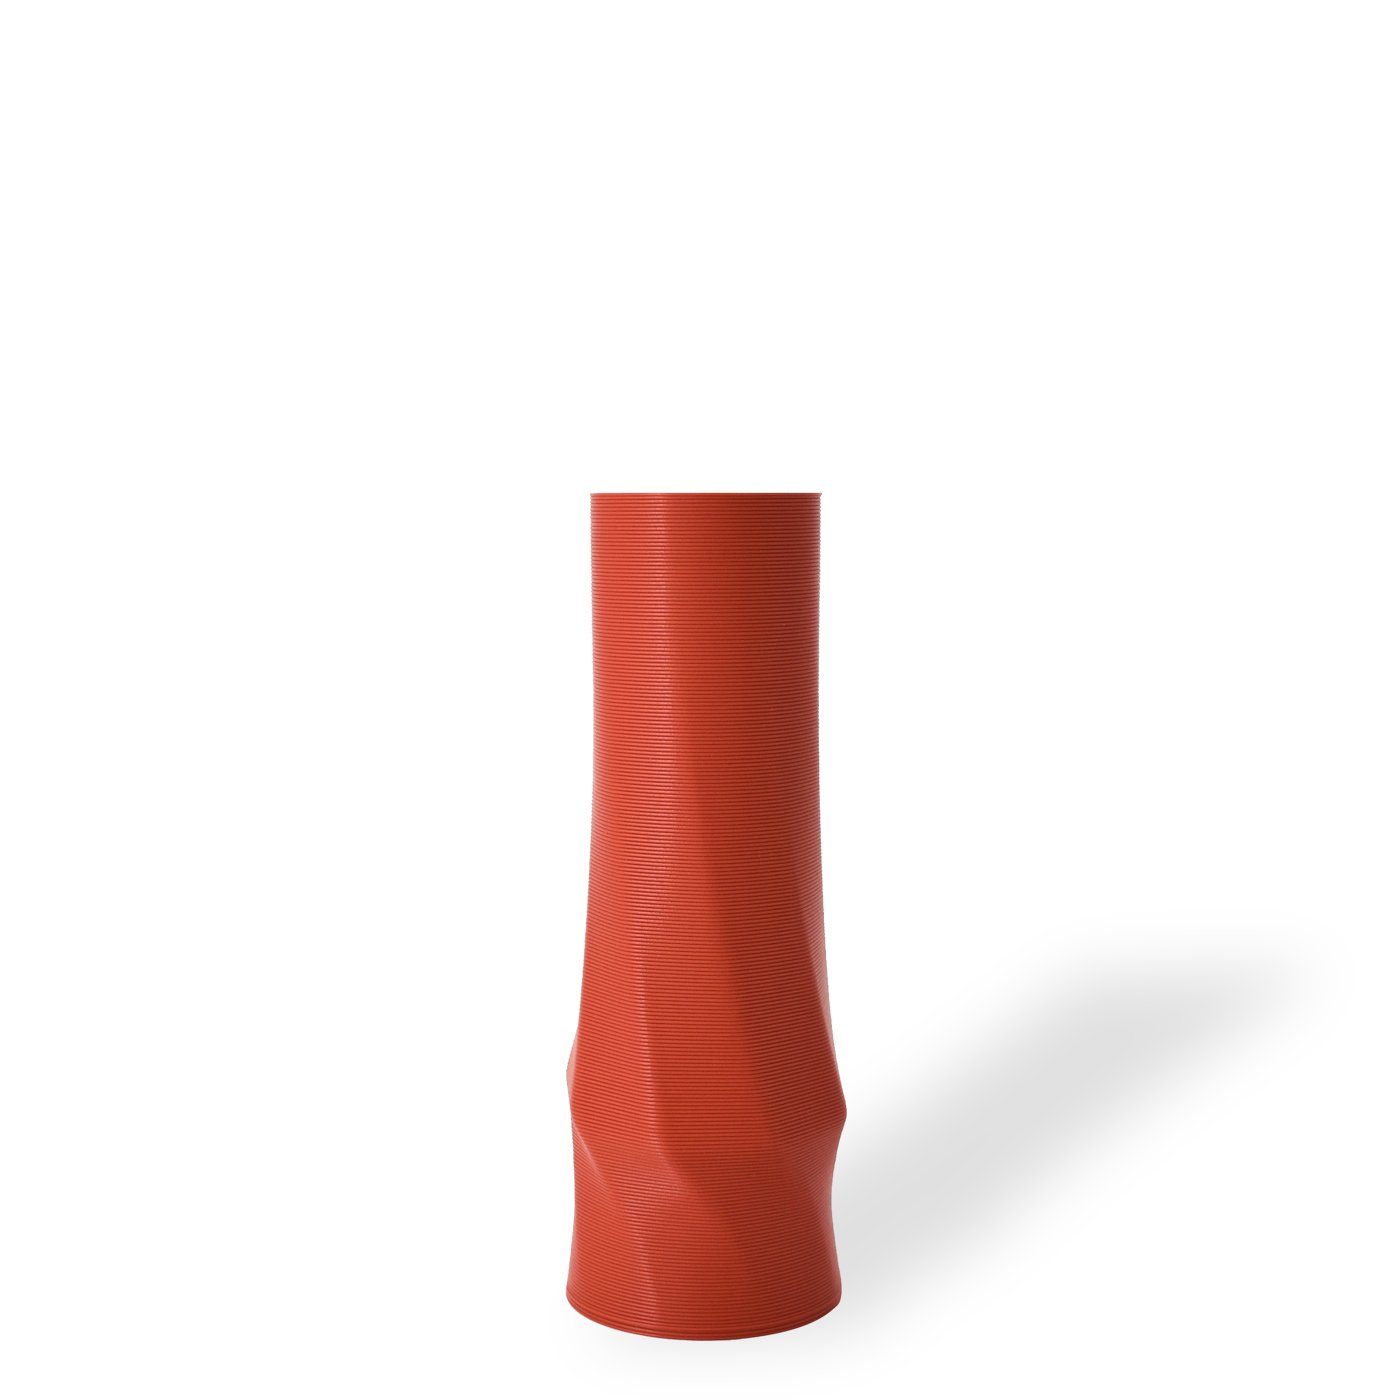 Shapes - Decorations Dekovase the vase - circle (basic), 3D Vasen, viele Farben, 100% 3D-Druck (Einzelmodell, 1 Vase), Wasserdicht; Leichte Struktur innerhalb des Materials (Rillung) Terracotta (rot) | Dekovasen